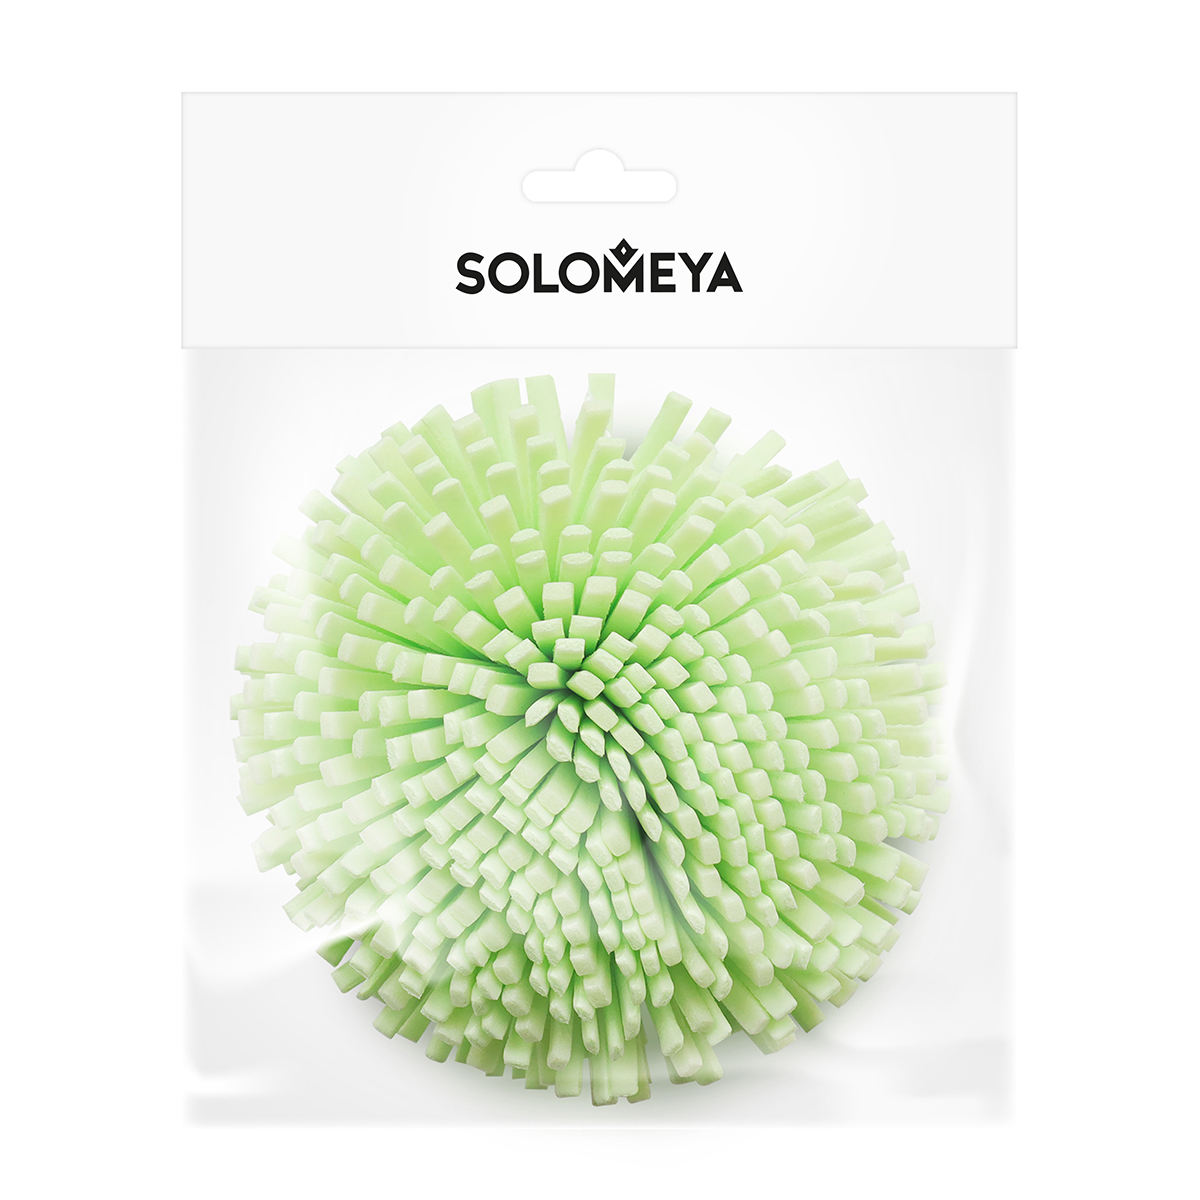 Мочалка спонж Solomeya для тела зеленая solomeya мочалка спонж для тела желтая bath sponge yellow 1 шт